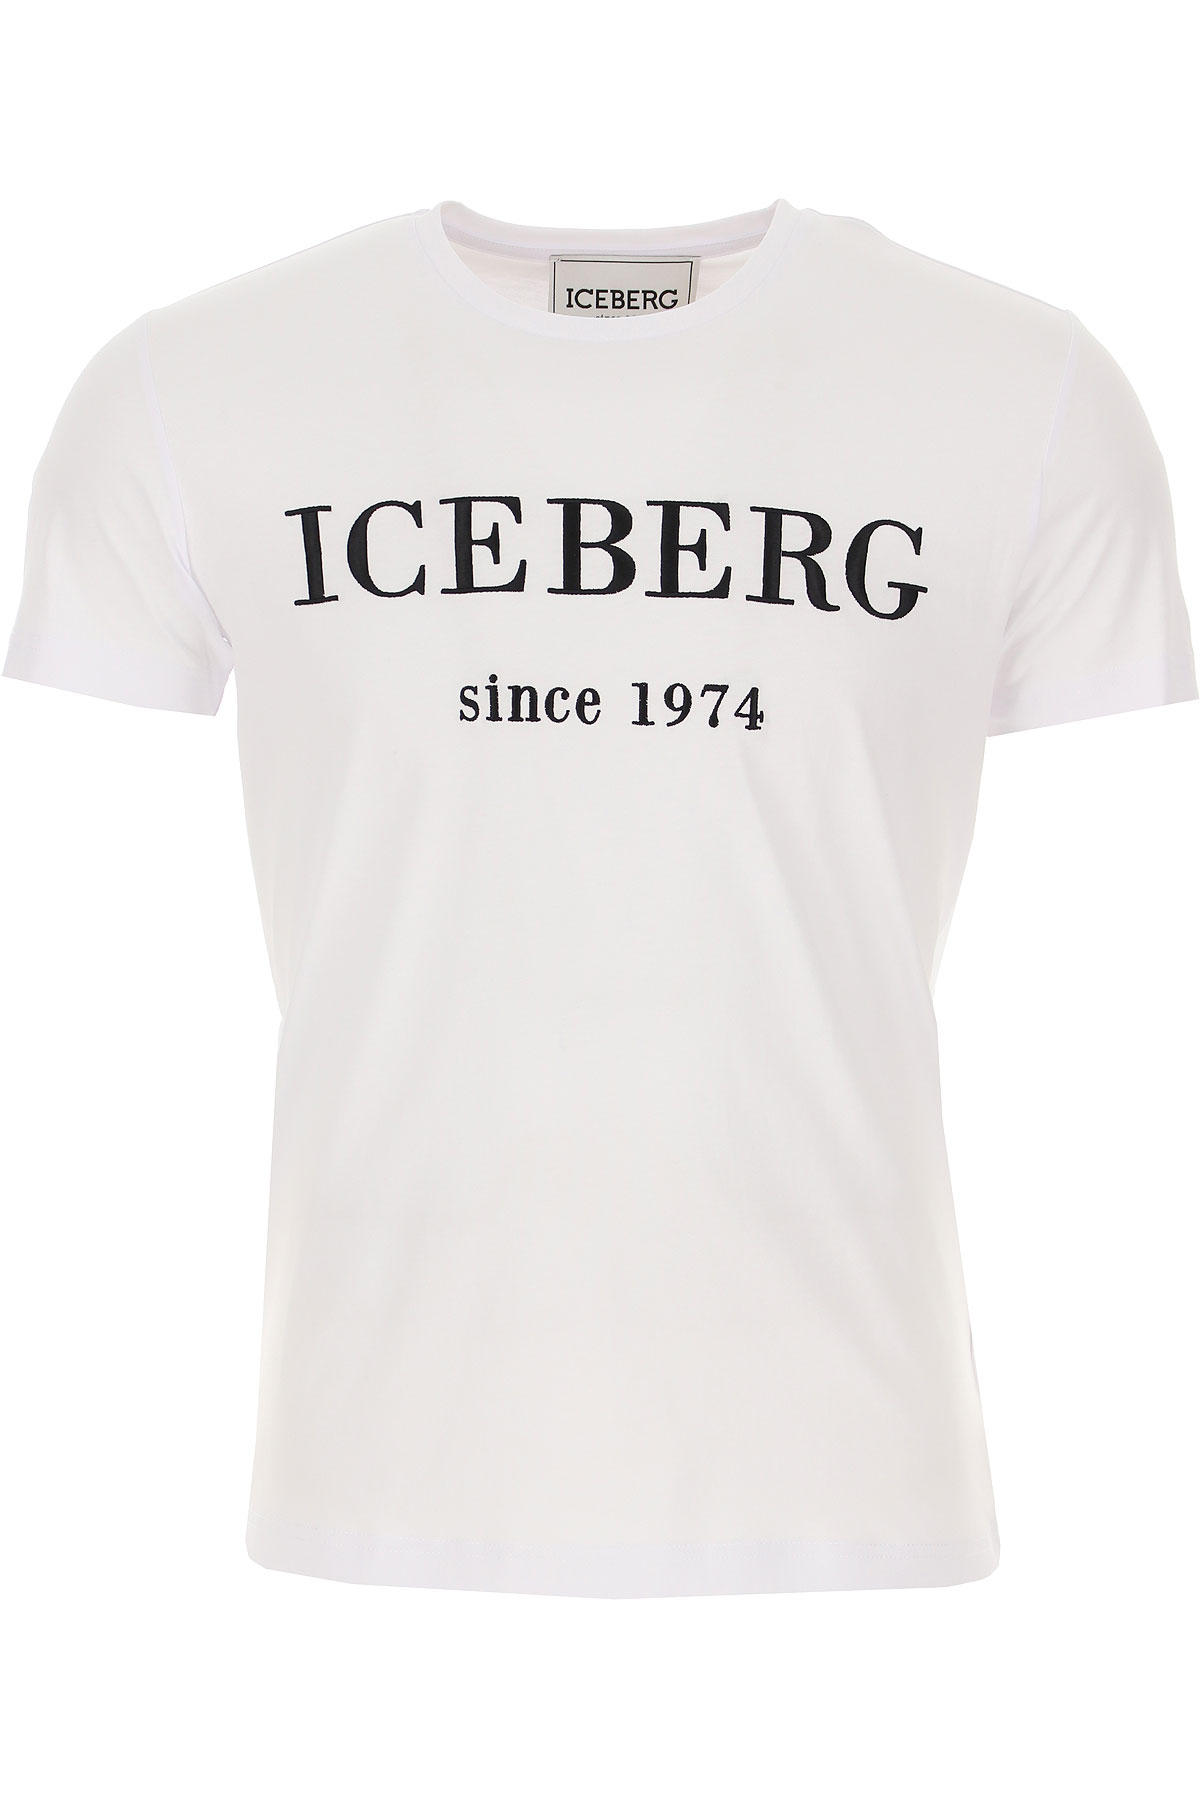 iceberg clothing rating